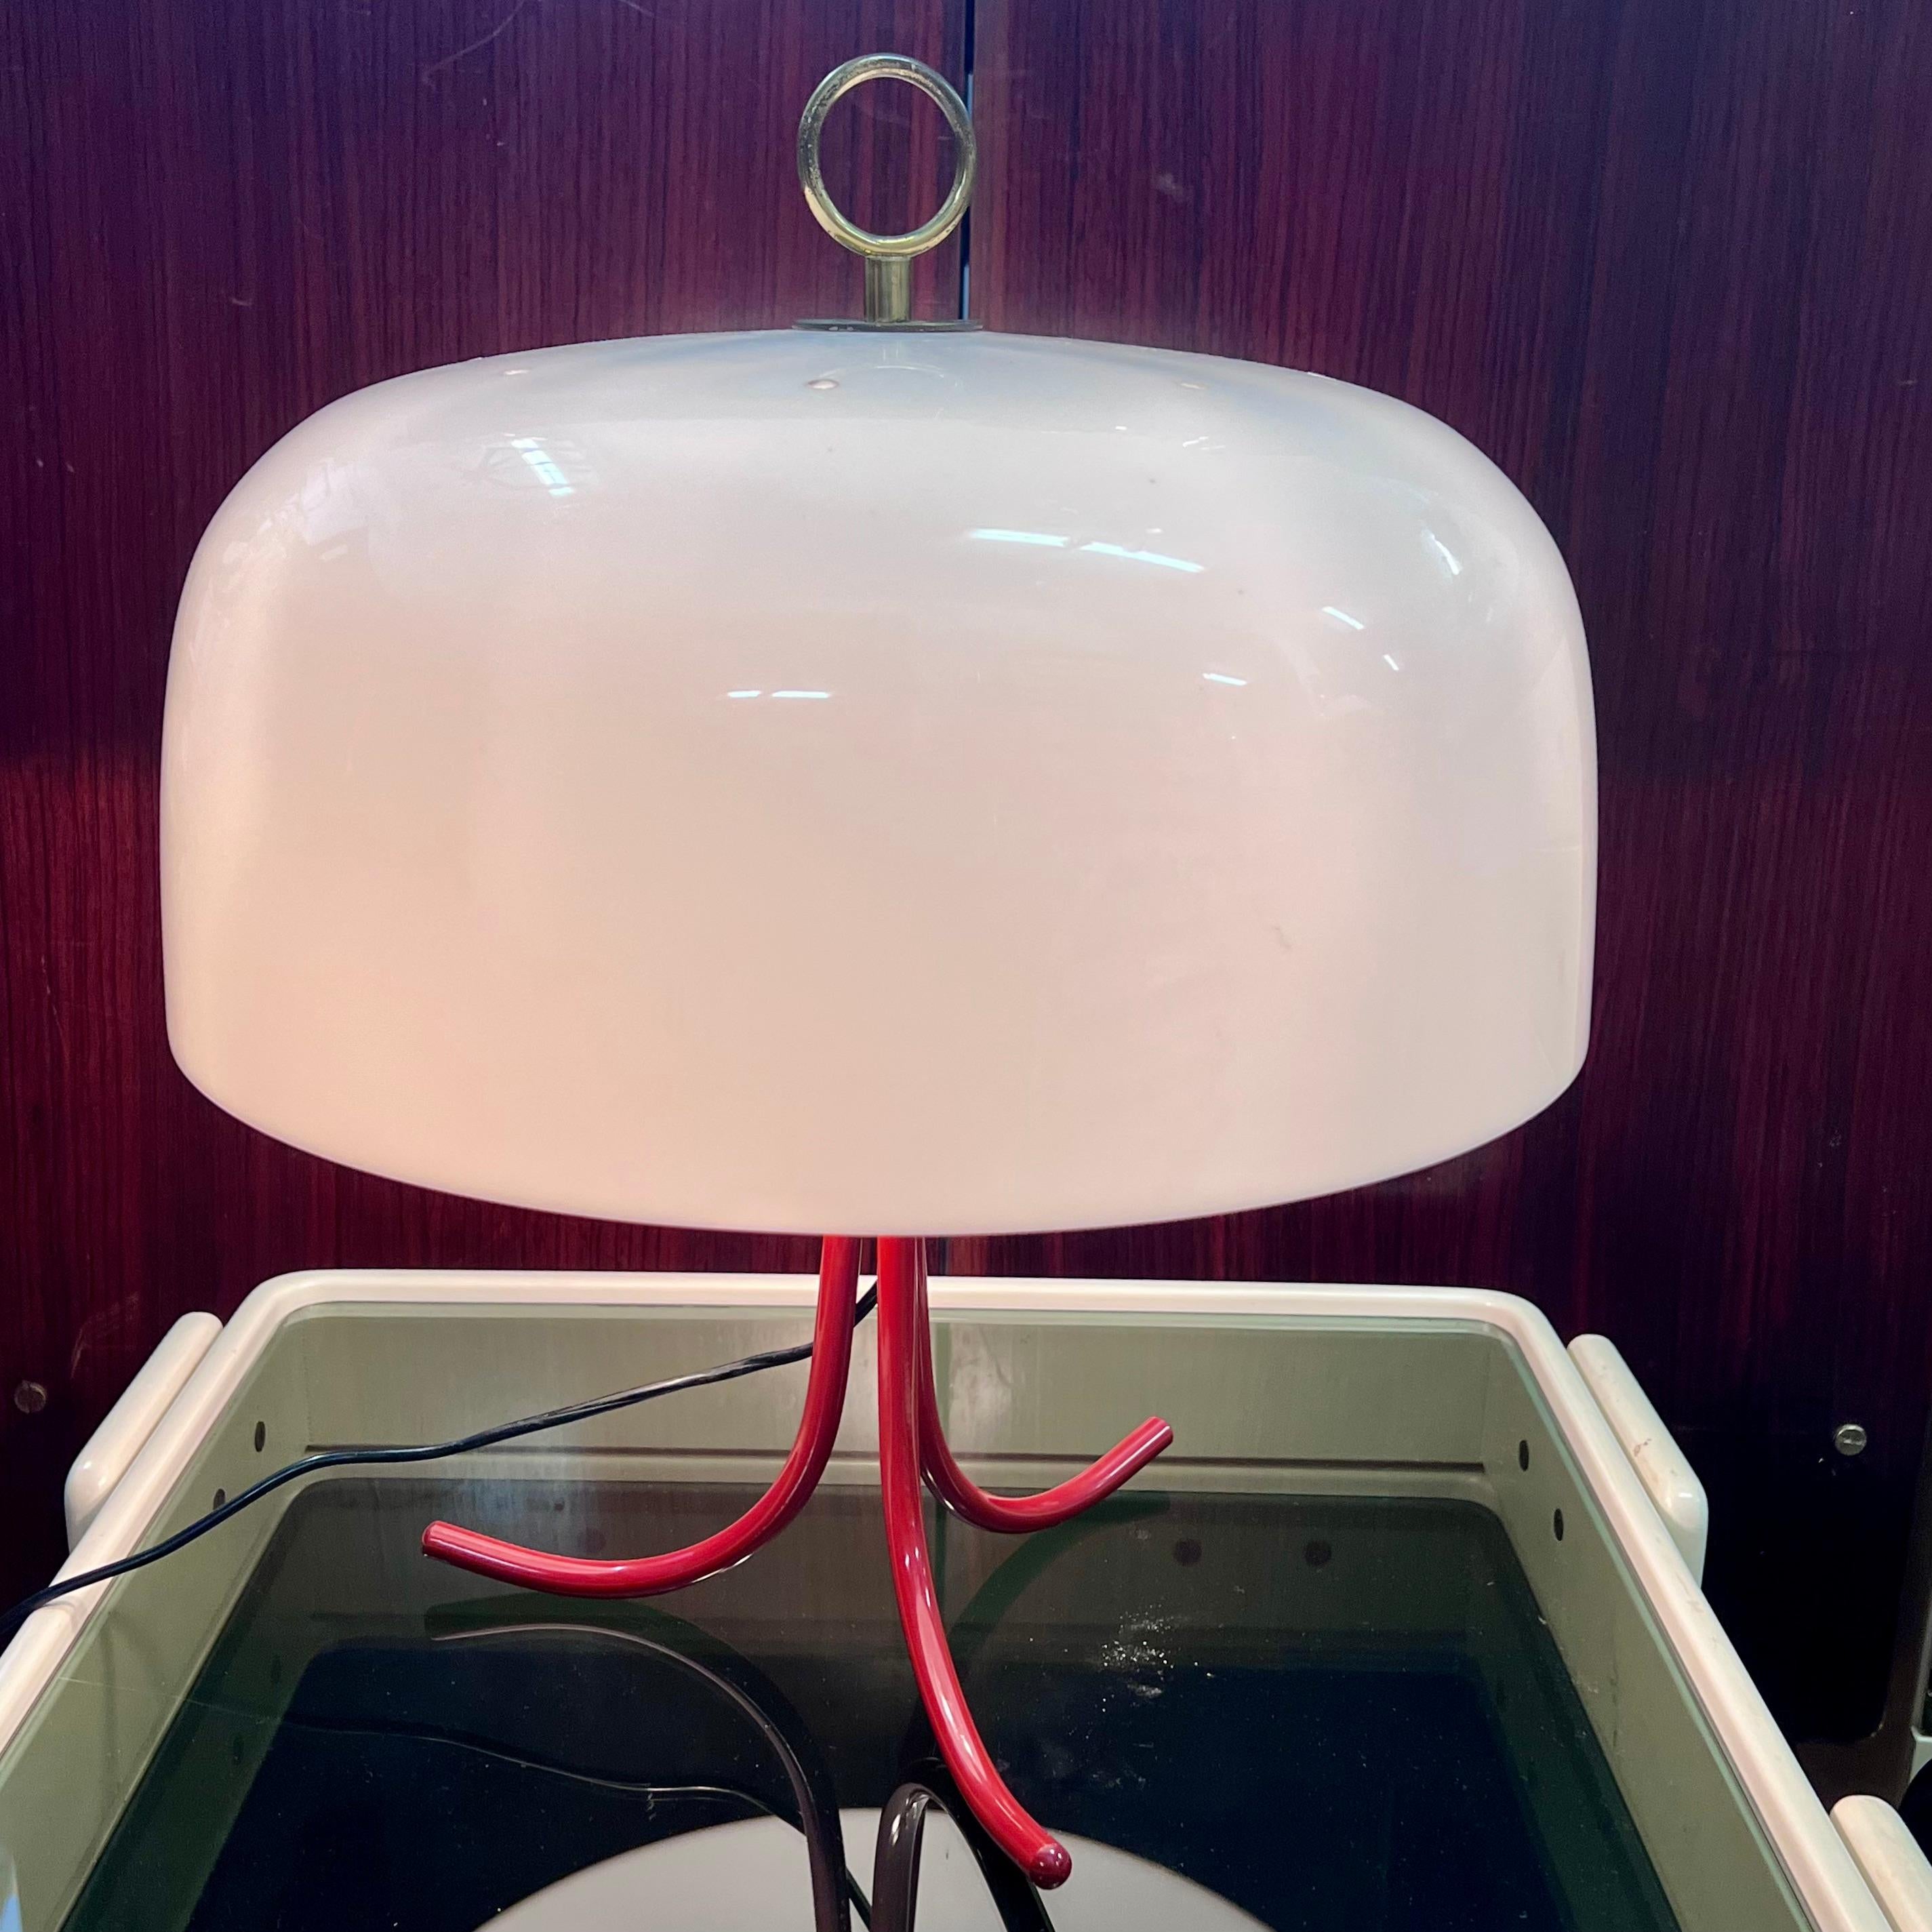 Rarissima lampada da tavolo dei designer italiani Sergio Asti & Sergio Favre, del 1960 e prodotta da Rusconi.
Presente nel volume 